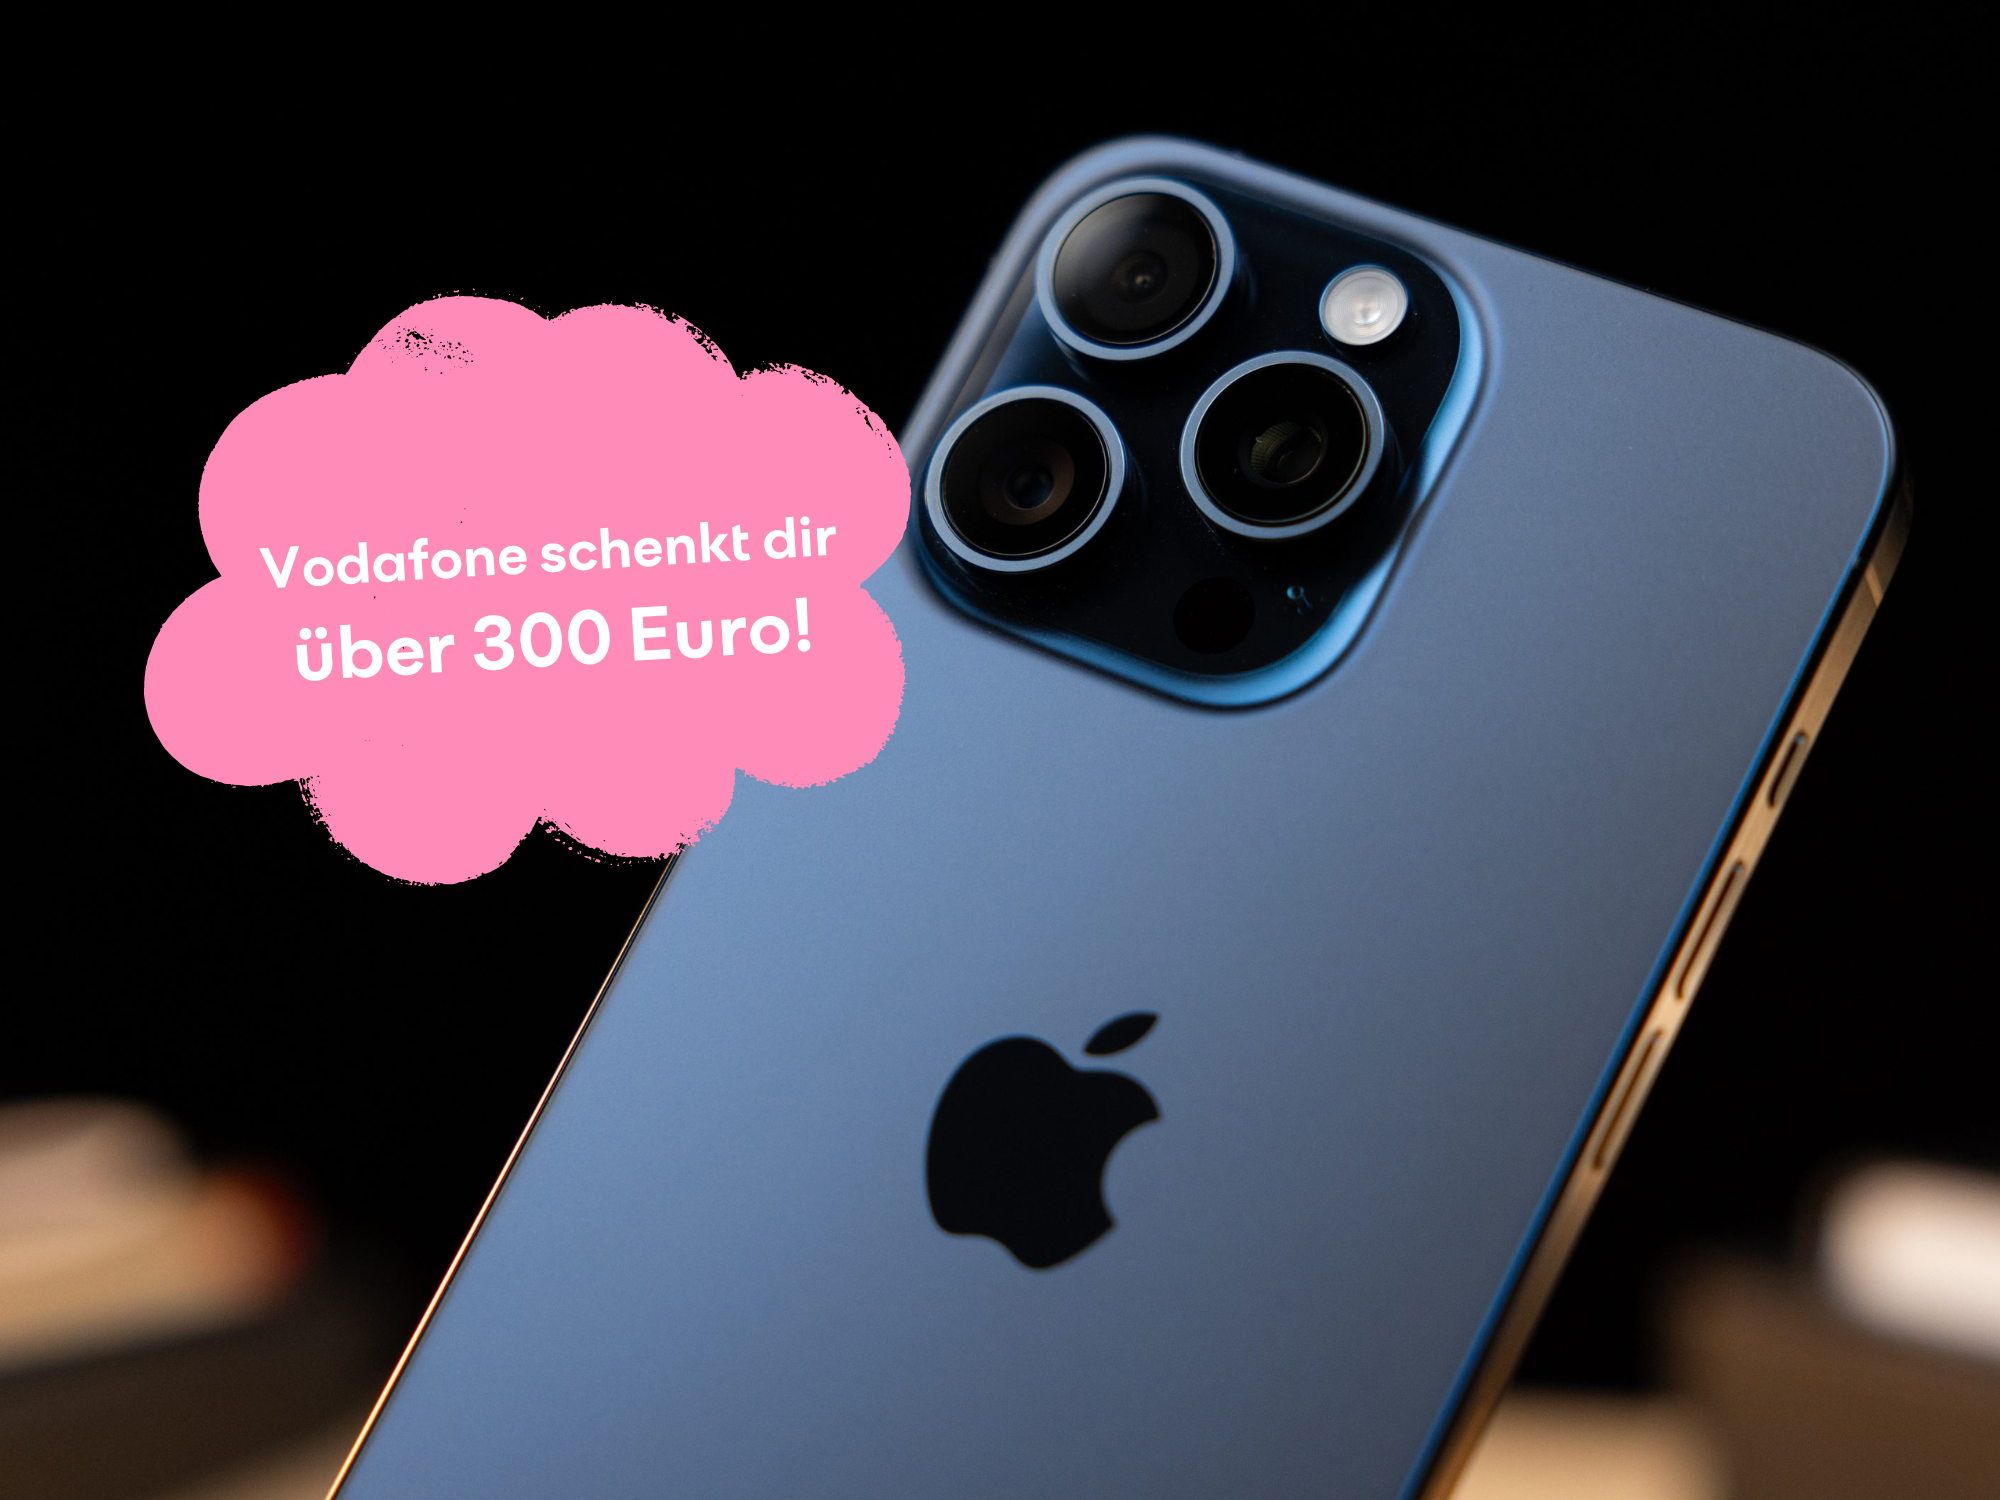 Vodafone schenkt dir über 300 Euro bei iPhone-Bundles